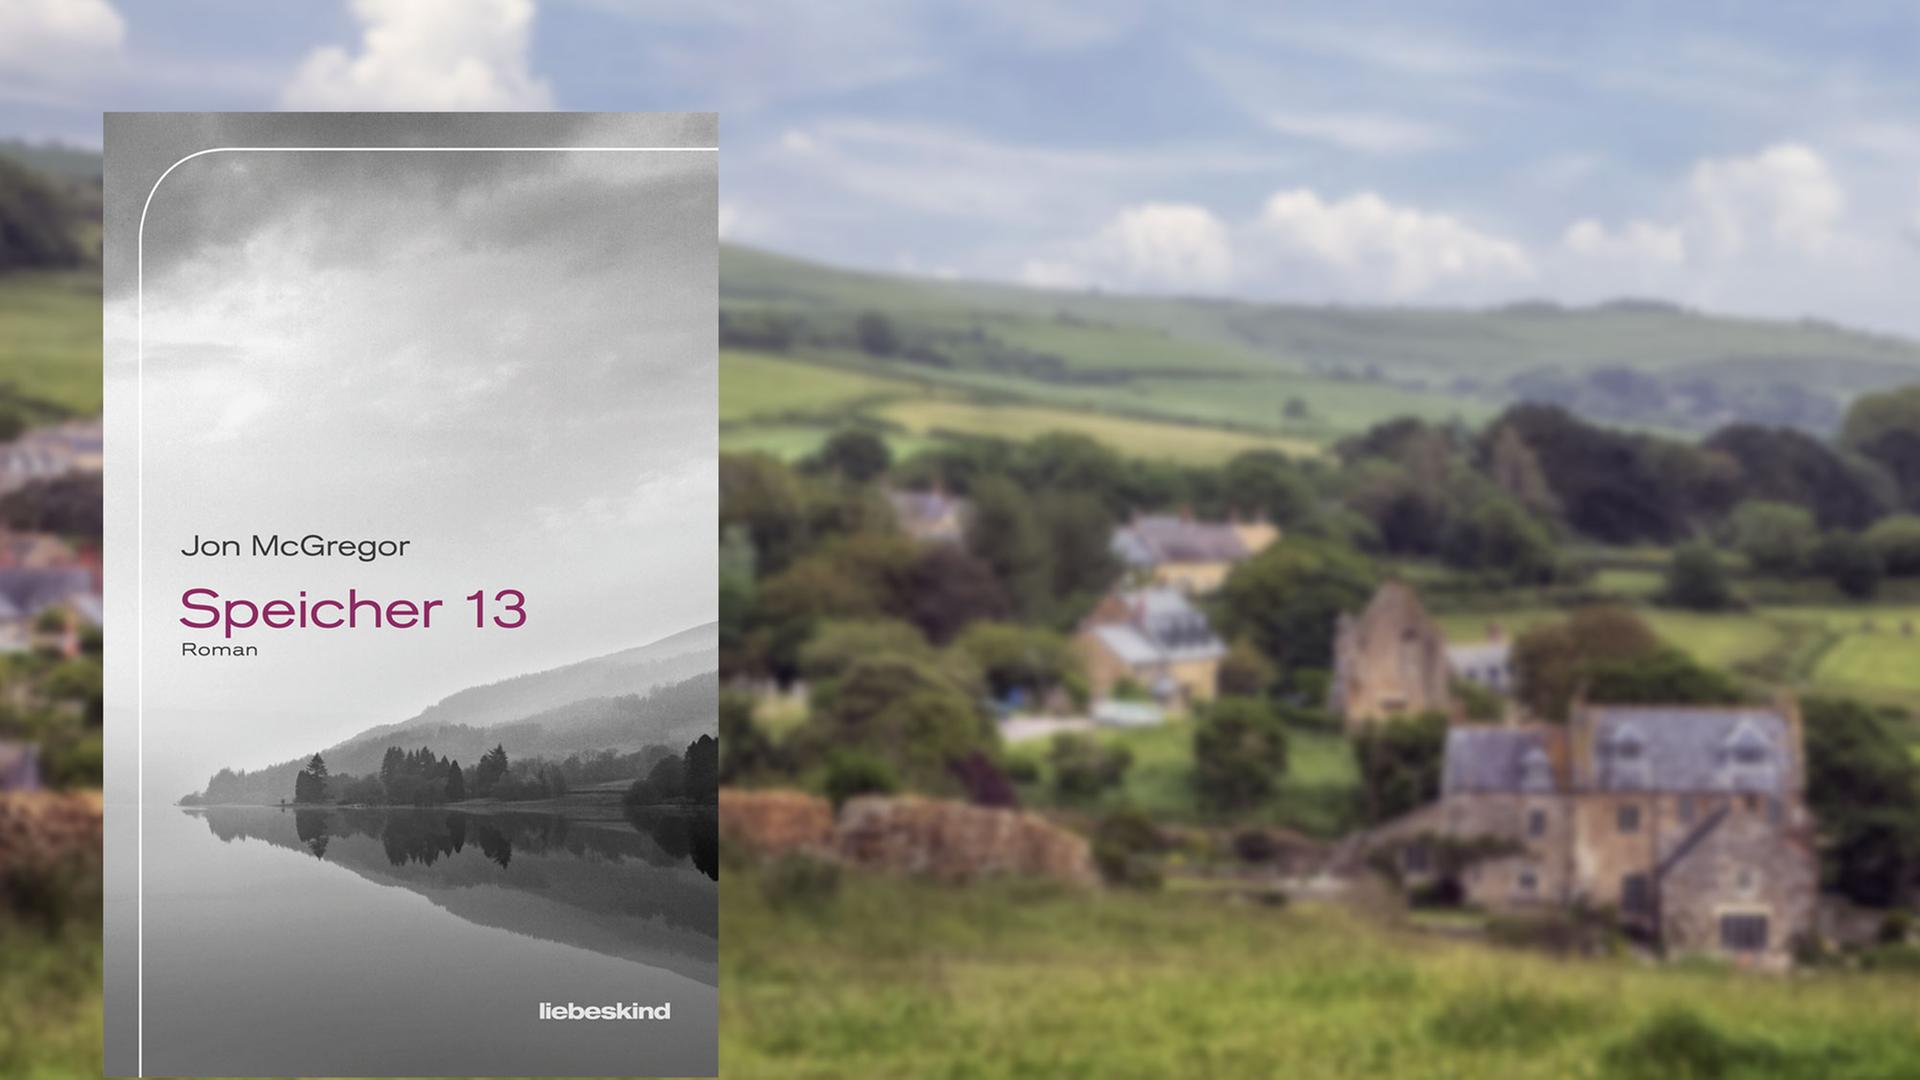 Buchcover "Speicher 13" von Jon McGregor, im Hintergrund ein Dorf in England